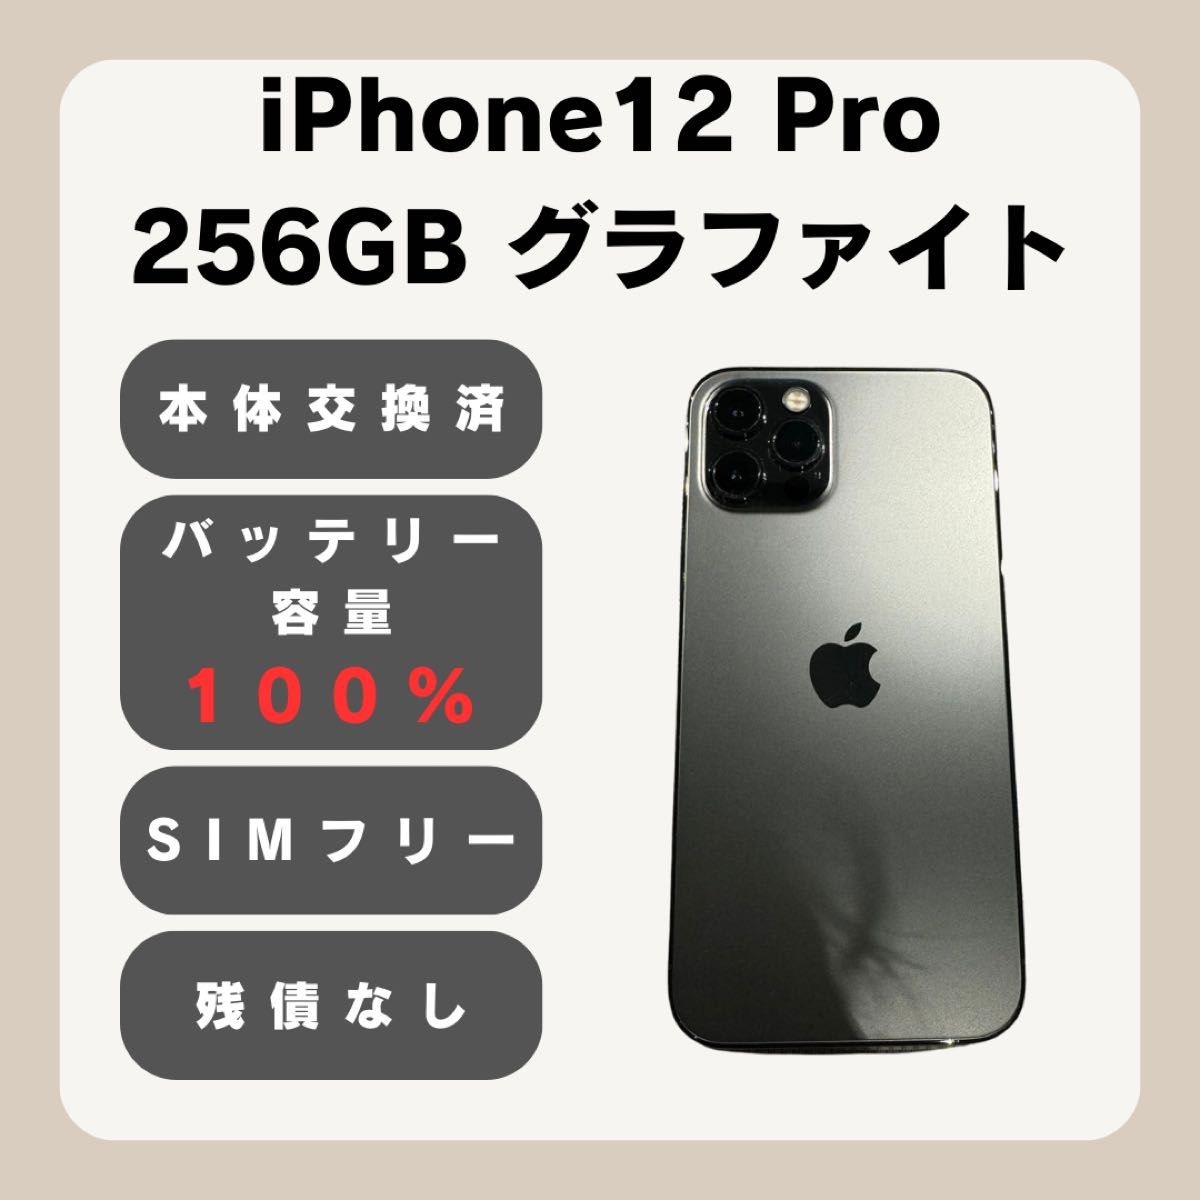 iPhone 12 pro 256GB SIMフリー 100% グラファイト